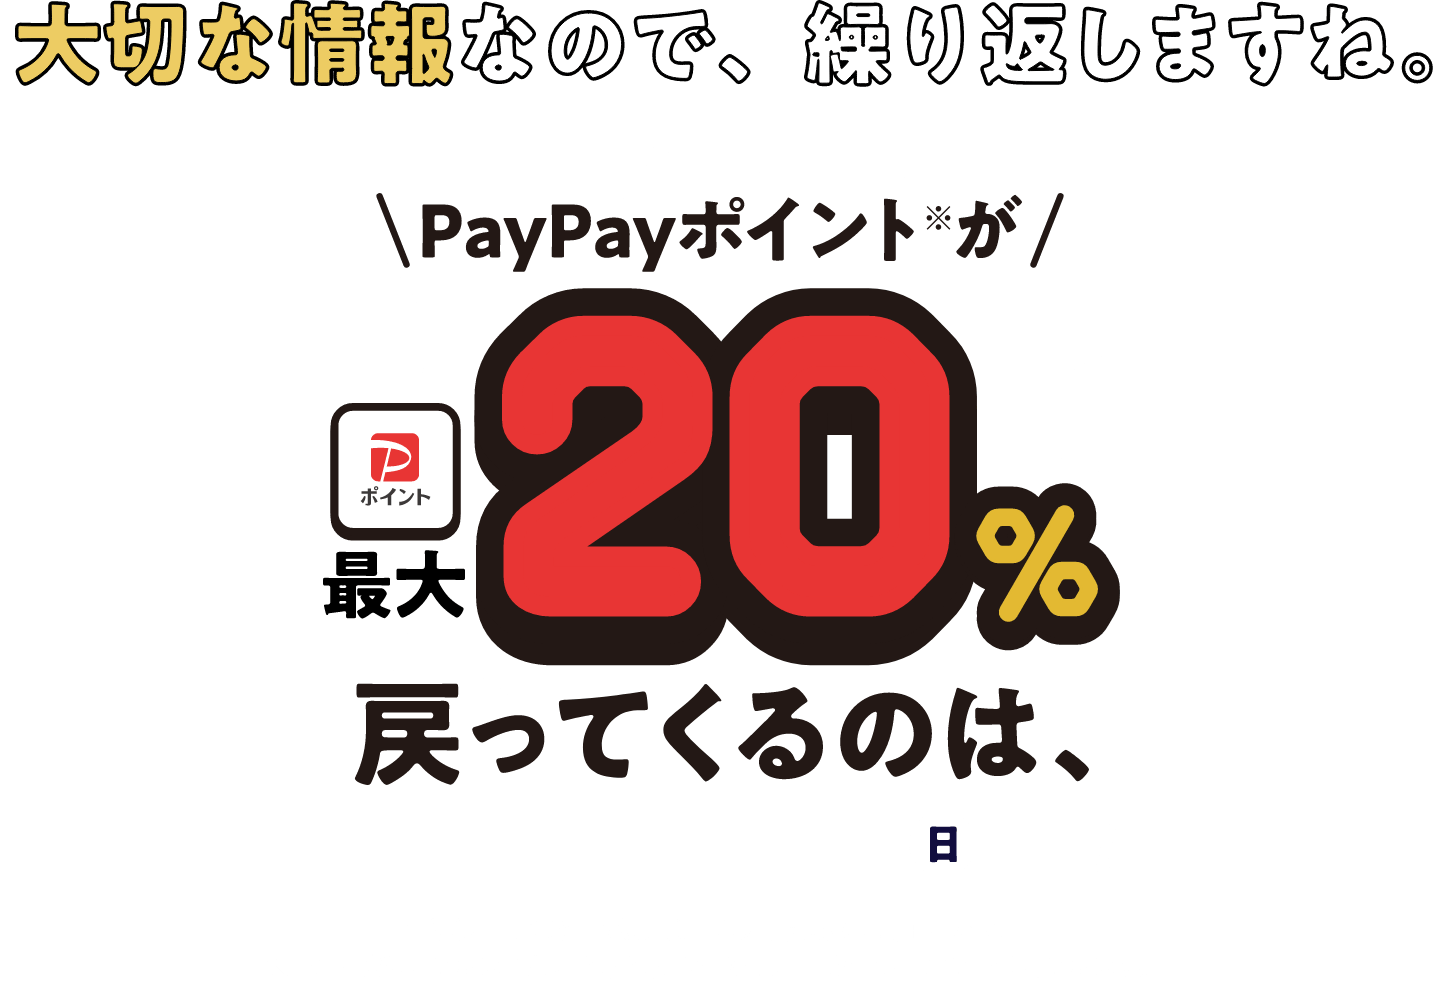 大切な情報なので、繰り返しますね。 PayPayポイントが最大20%戻ってくるのは、2023年4月30日(日)まで! ※付与上限はお一人様、期間中に最大6,000円相当まで。 ※出金・譲渡はできません。PayPay/PayPayカード公式ストアでも利用できます。